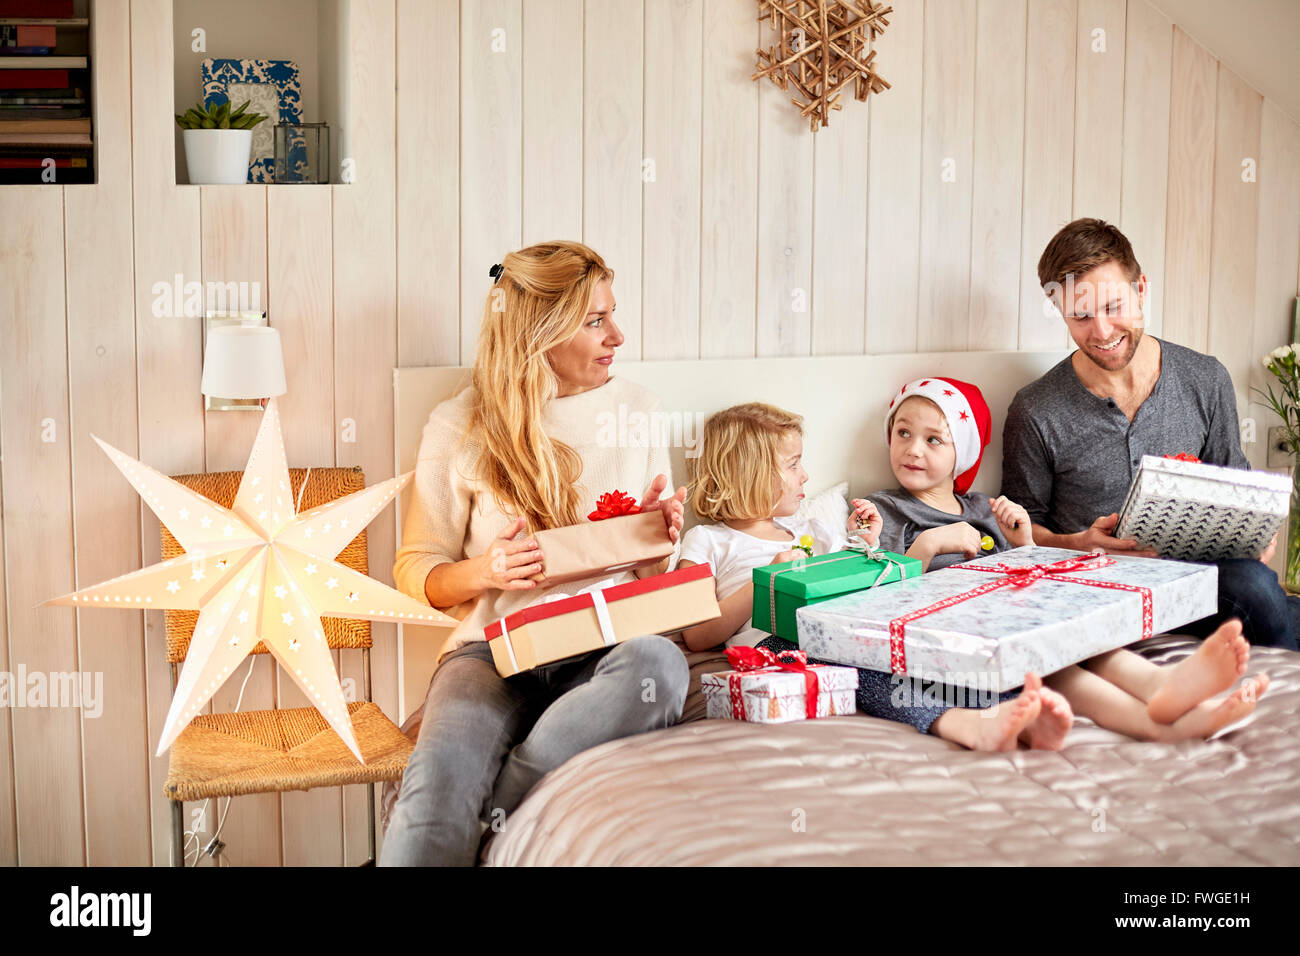 Eine Familie, zwei Erwachsene und zwei Kinder sitzen im Bett am Weihnachtsmorgen öffnen präsentiert gemeinsam. Stockfoto